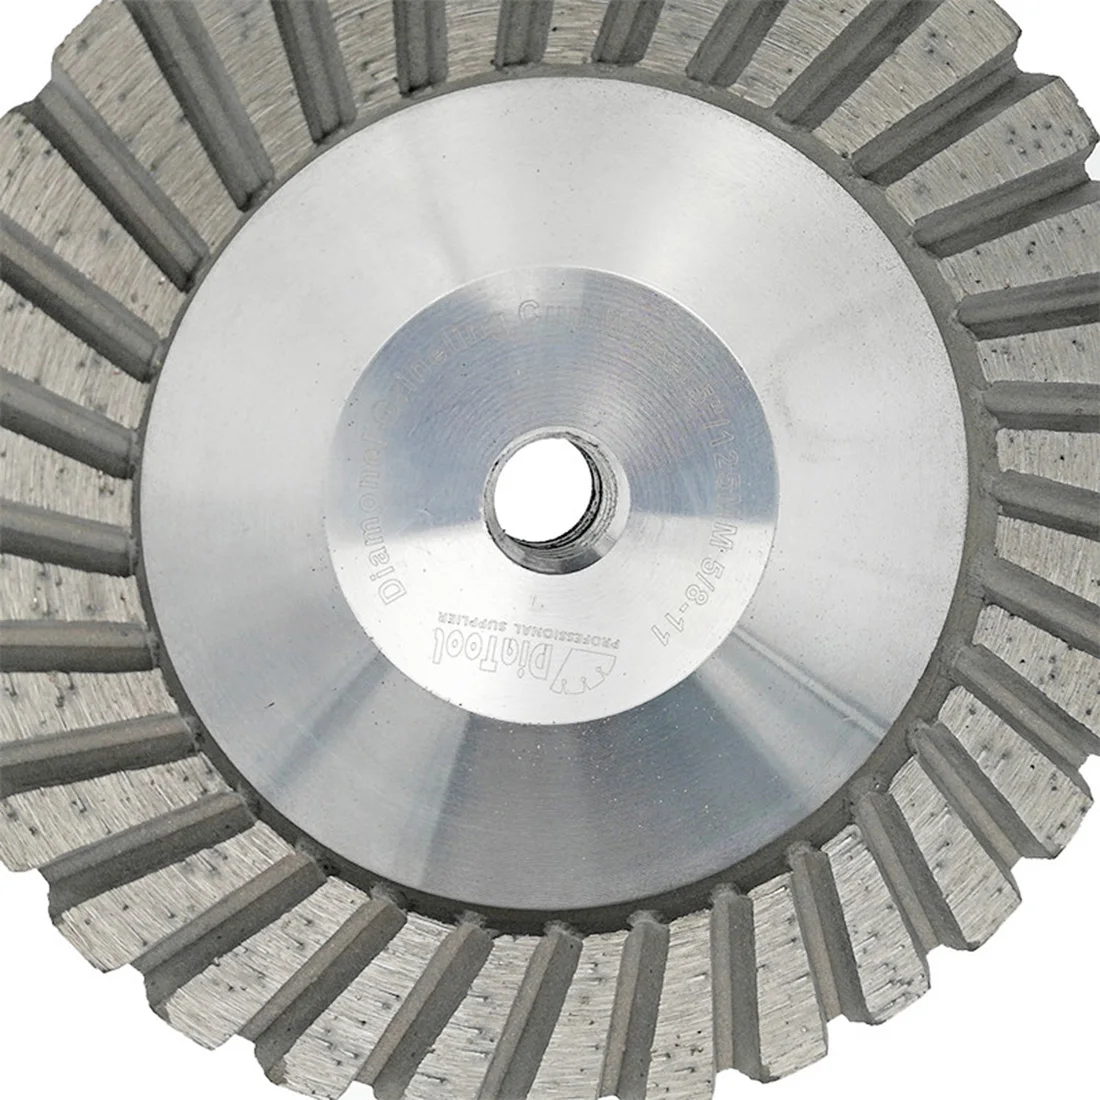 DIATOOL 2PK диаметр 125 мм/5 дюймов алмазная шлифовальная чашка на алюминиевой основе 5/8-11 Резьбовая зернистость#30 шлифовальный круг для гранитного бетона